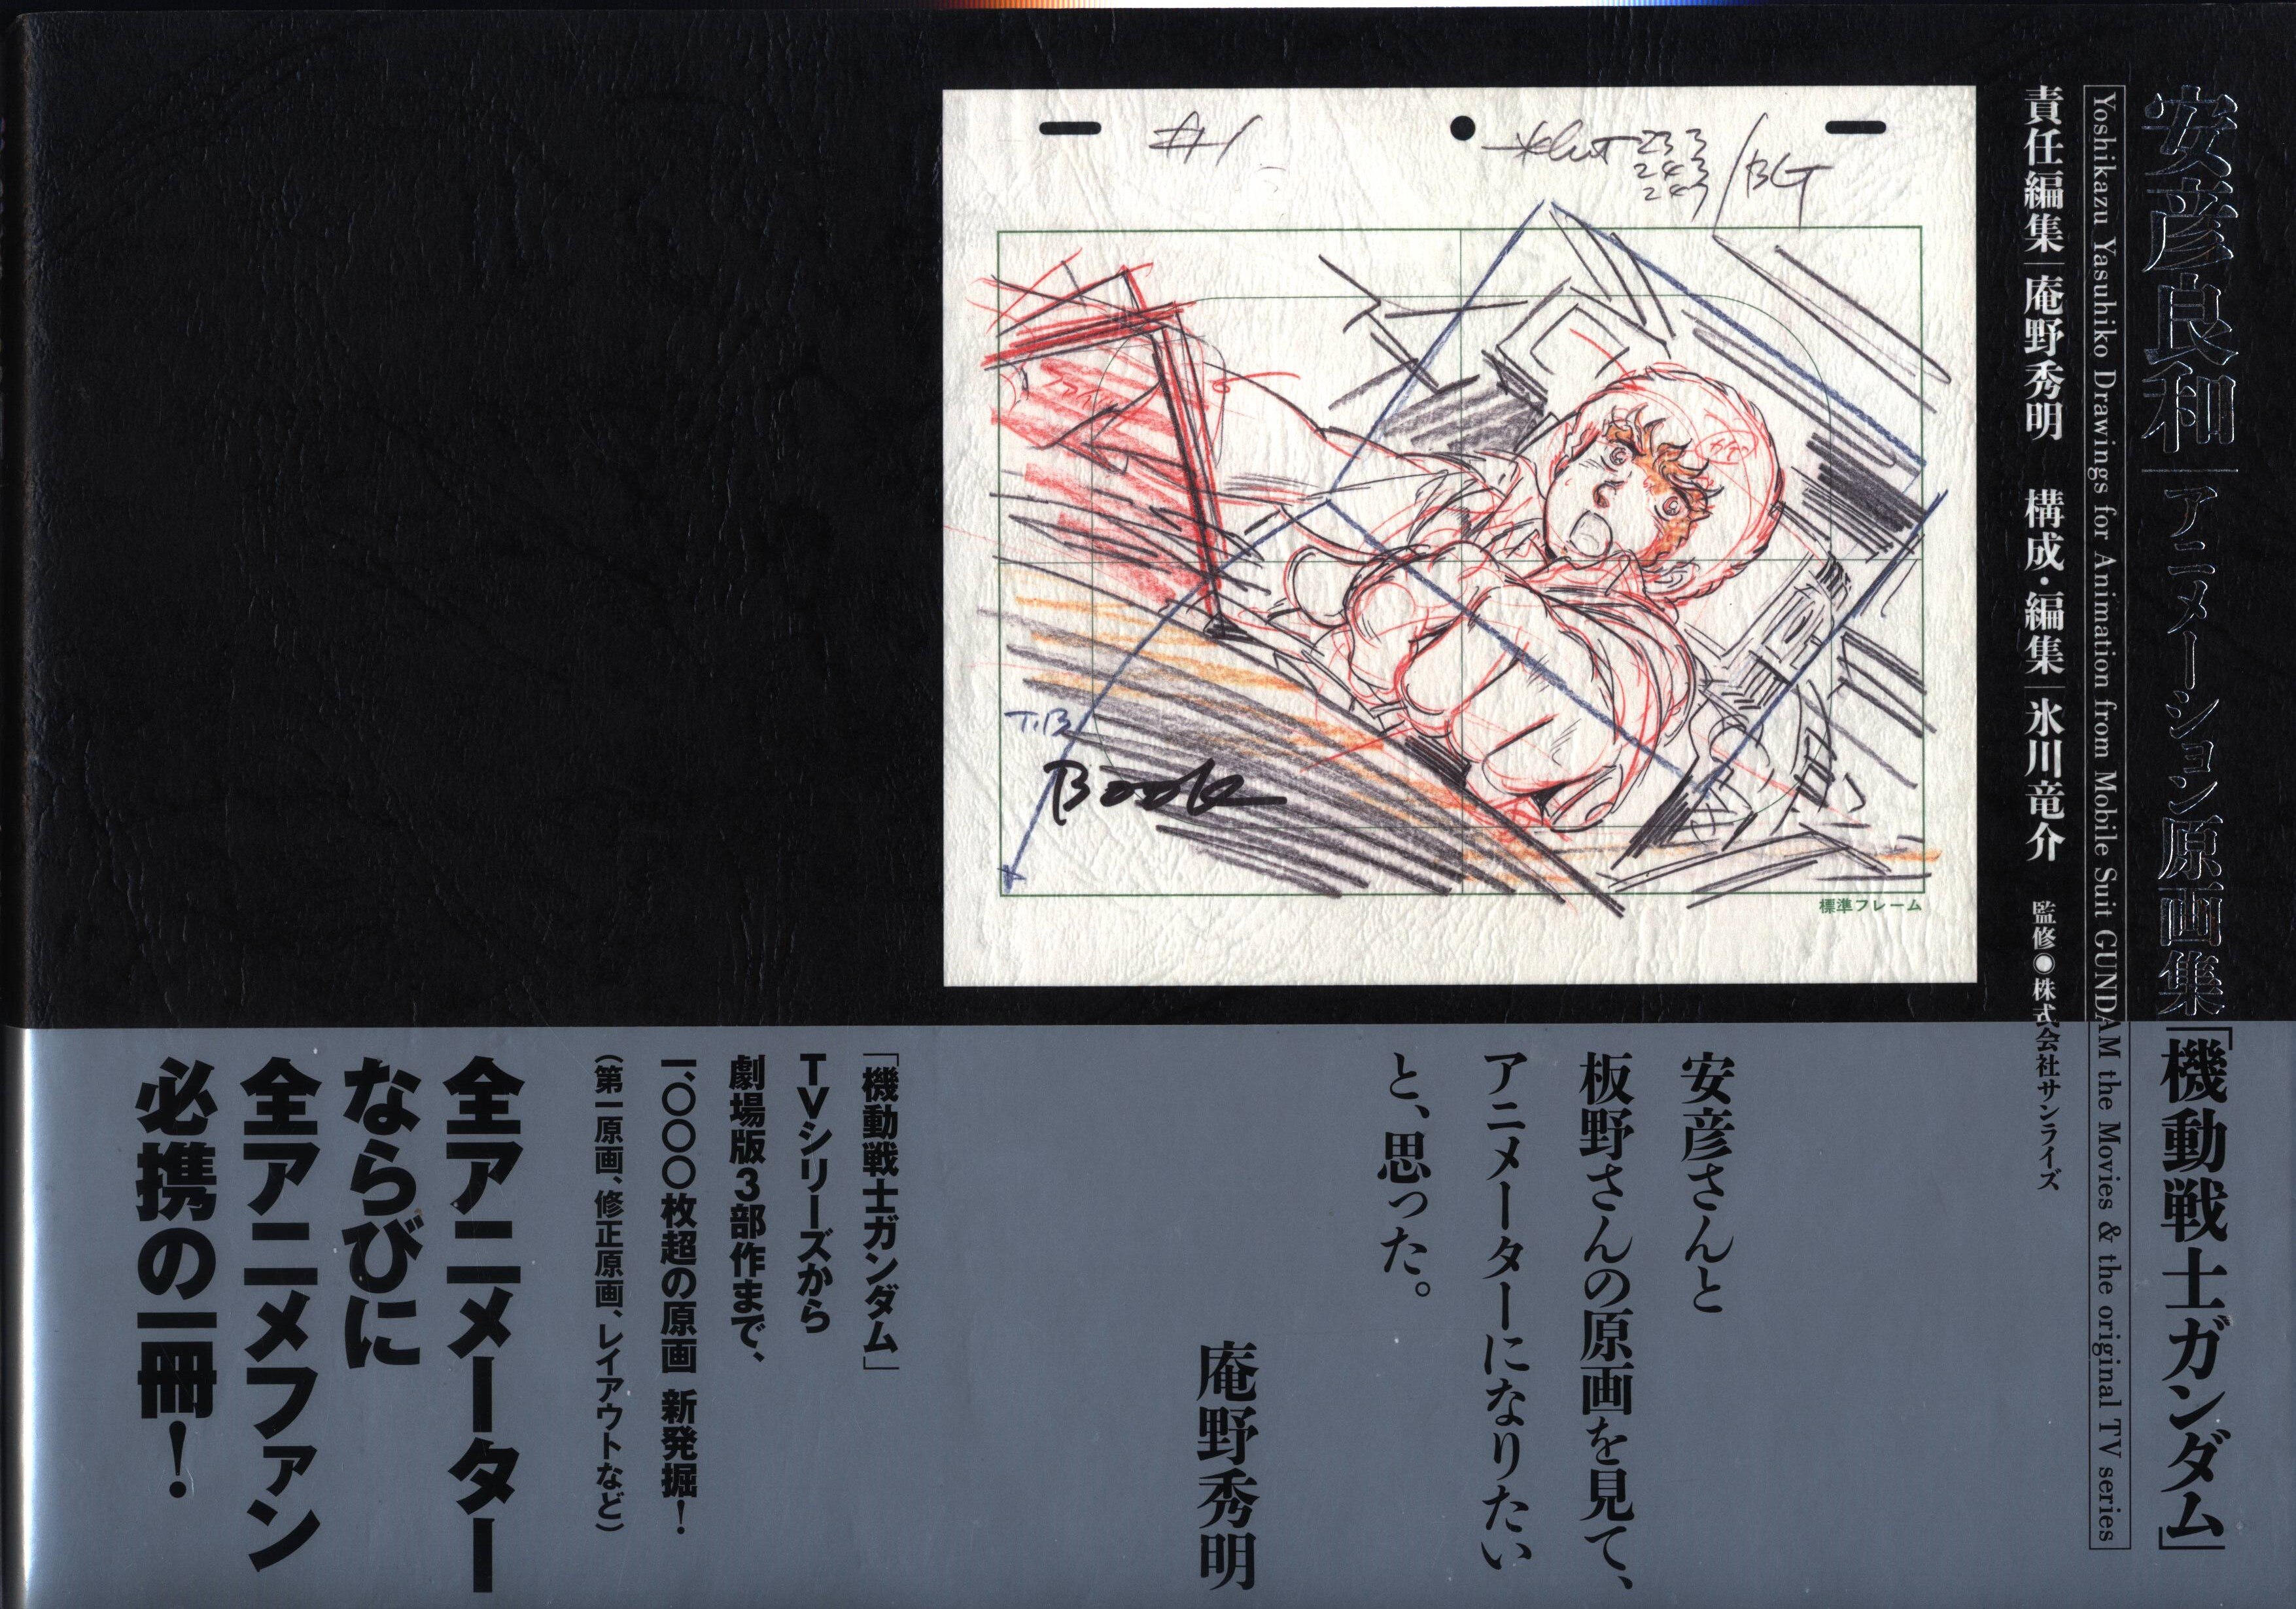 アート/エンタメ初版 安彦良和 アニメーション原画集「機動戦士